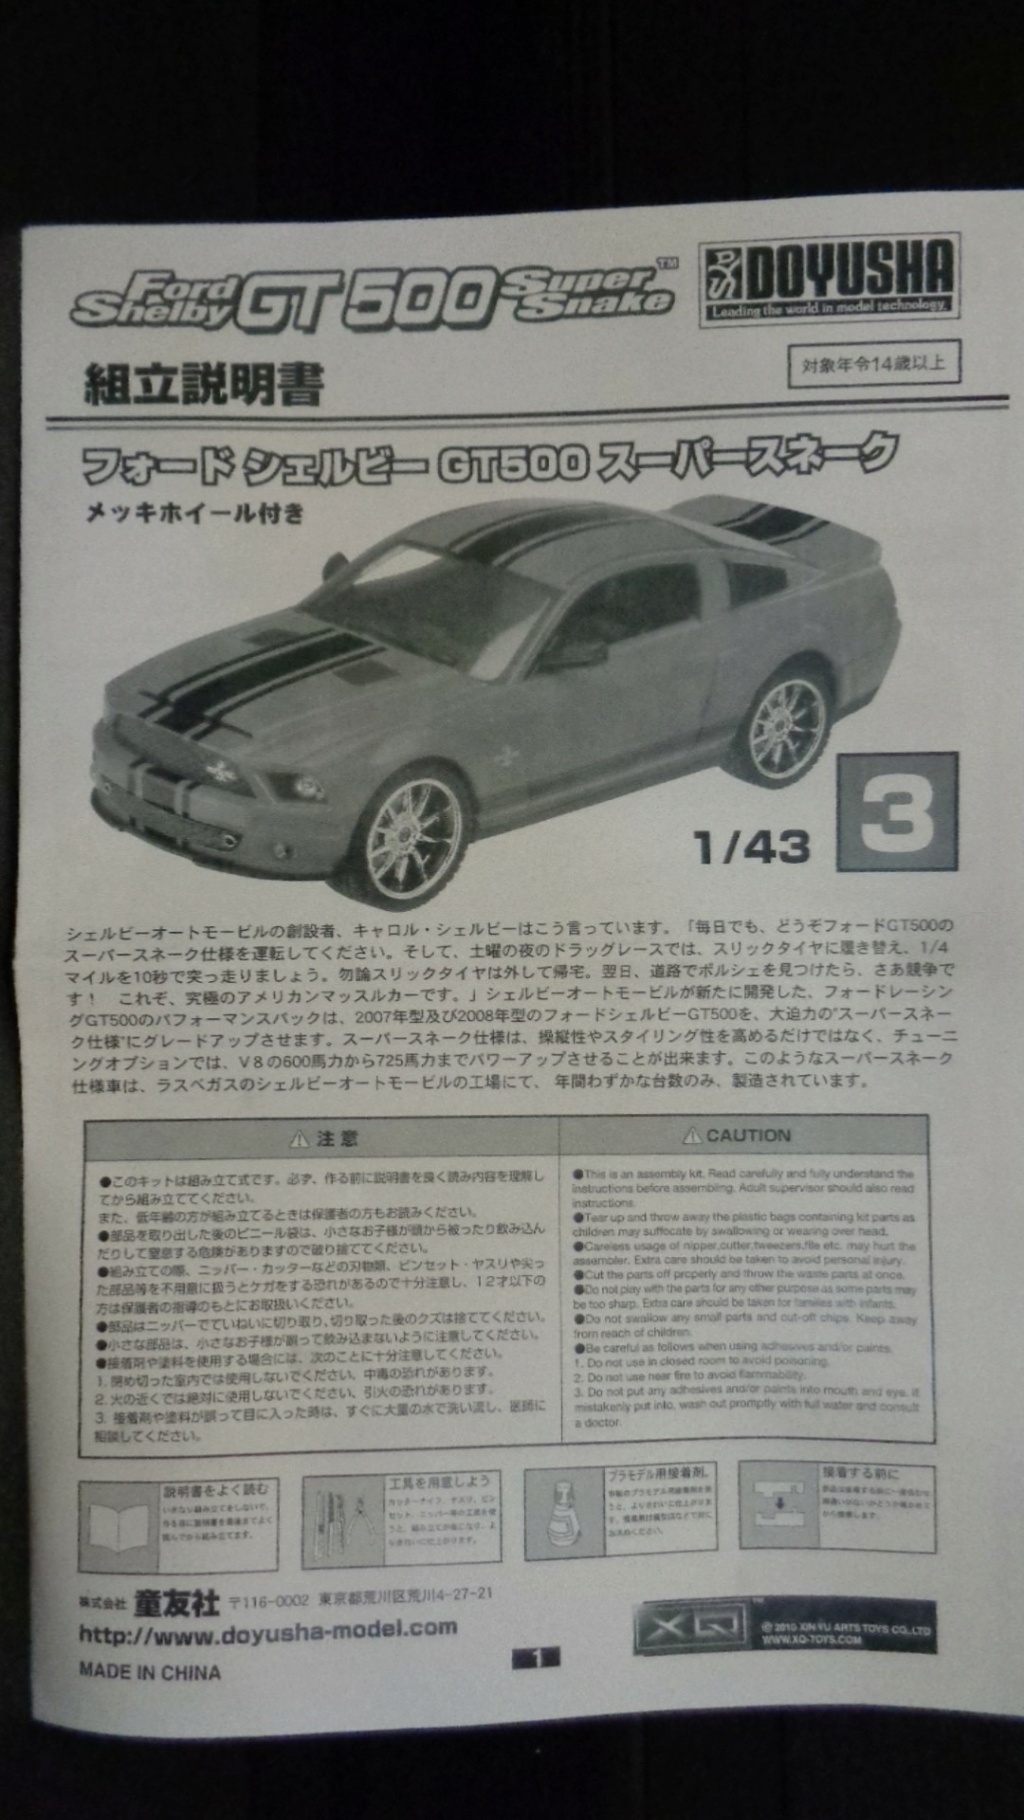 [DOYUSHA] FORD MUSTANG SHELBY GT 500 1/43ème Réf XQ43SC-3 Dsc00364